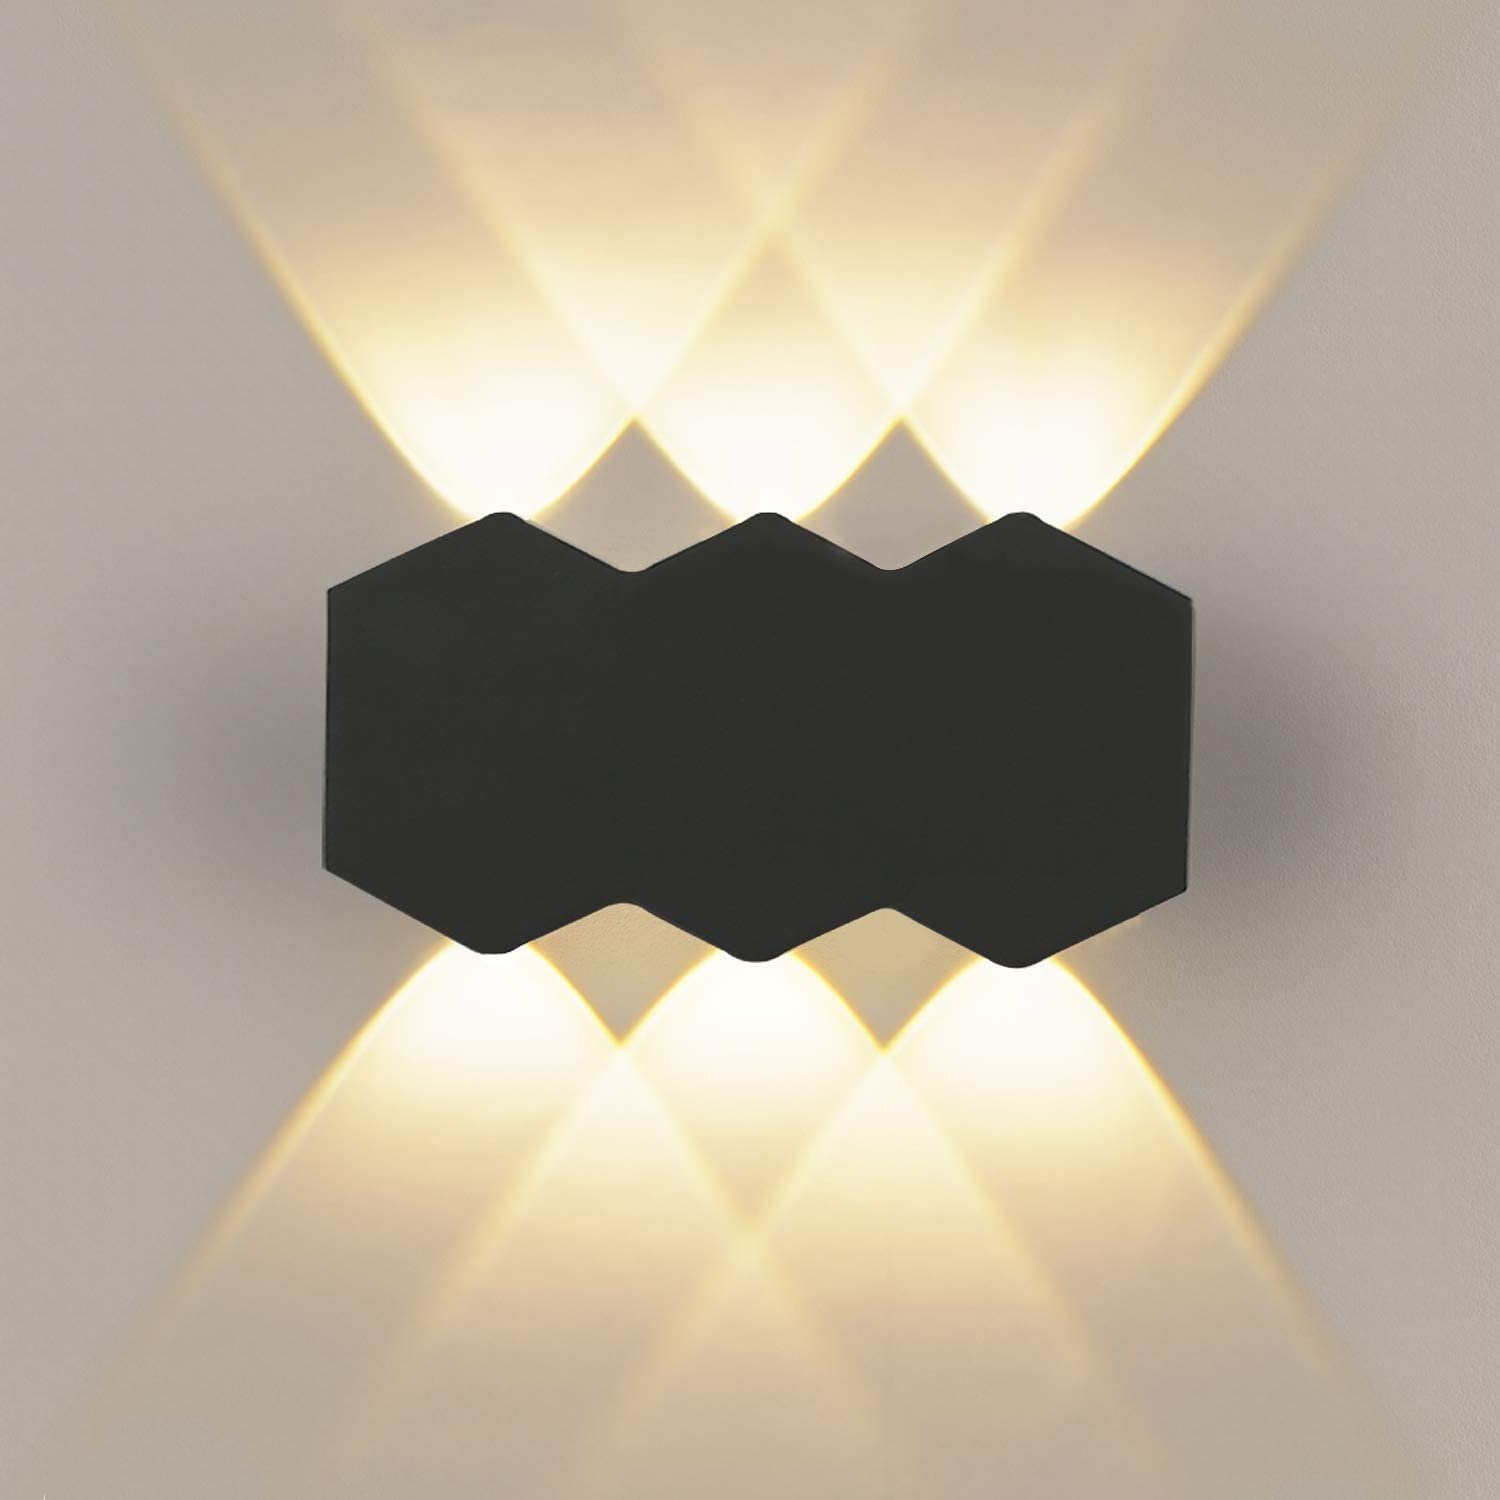 COB LED Wandlampe Wandleuchte Außenlampe Lampe Balkon Flur Garten Beleuchtung DE 